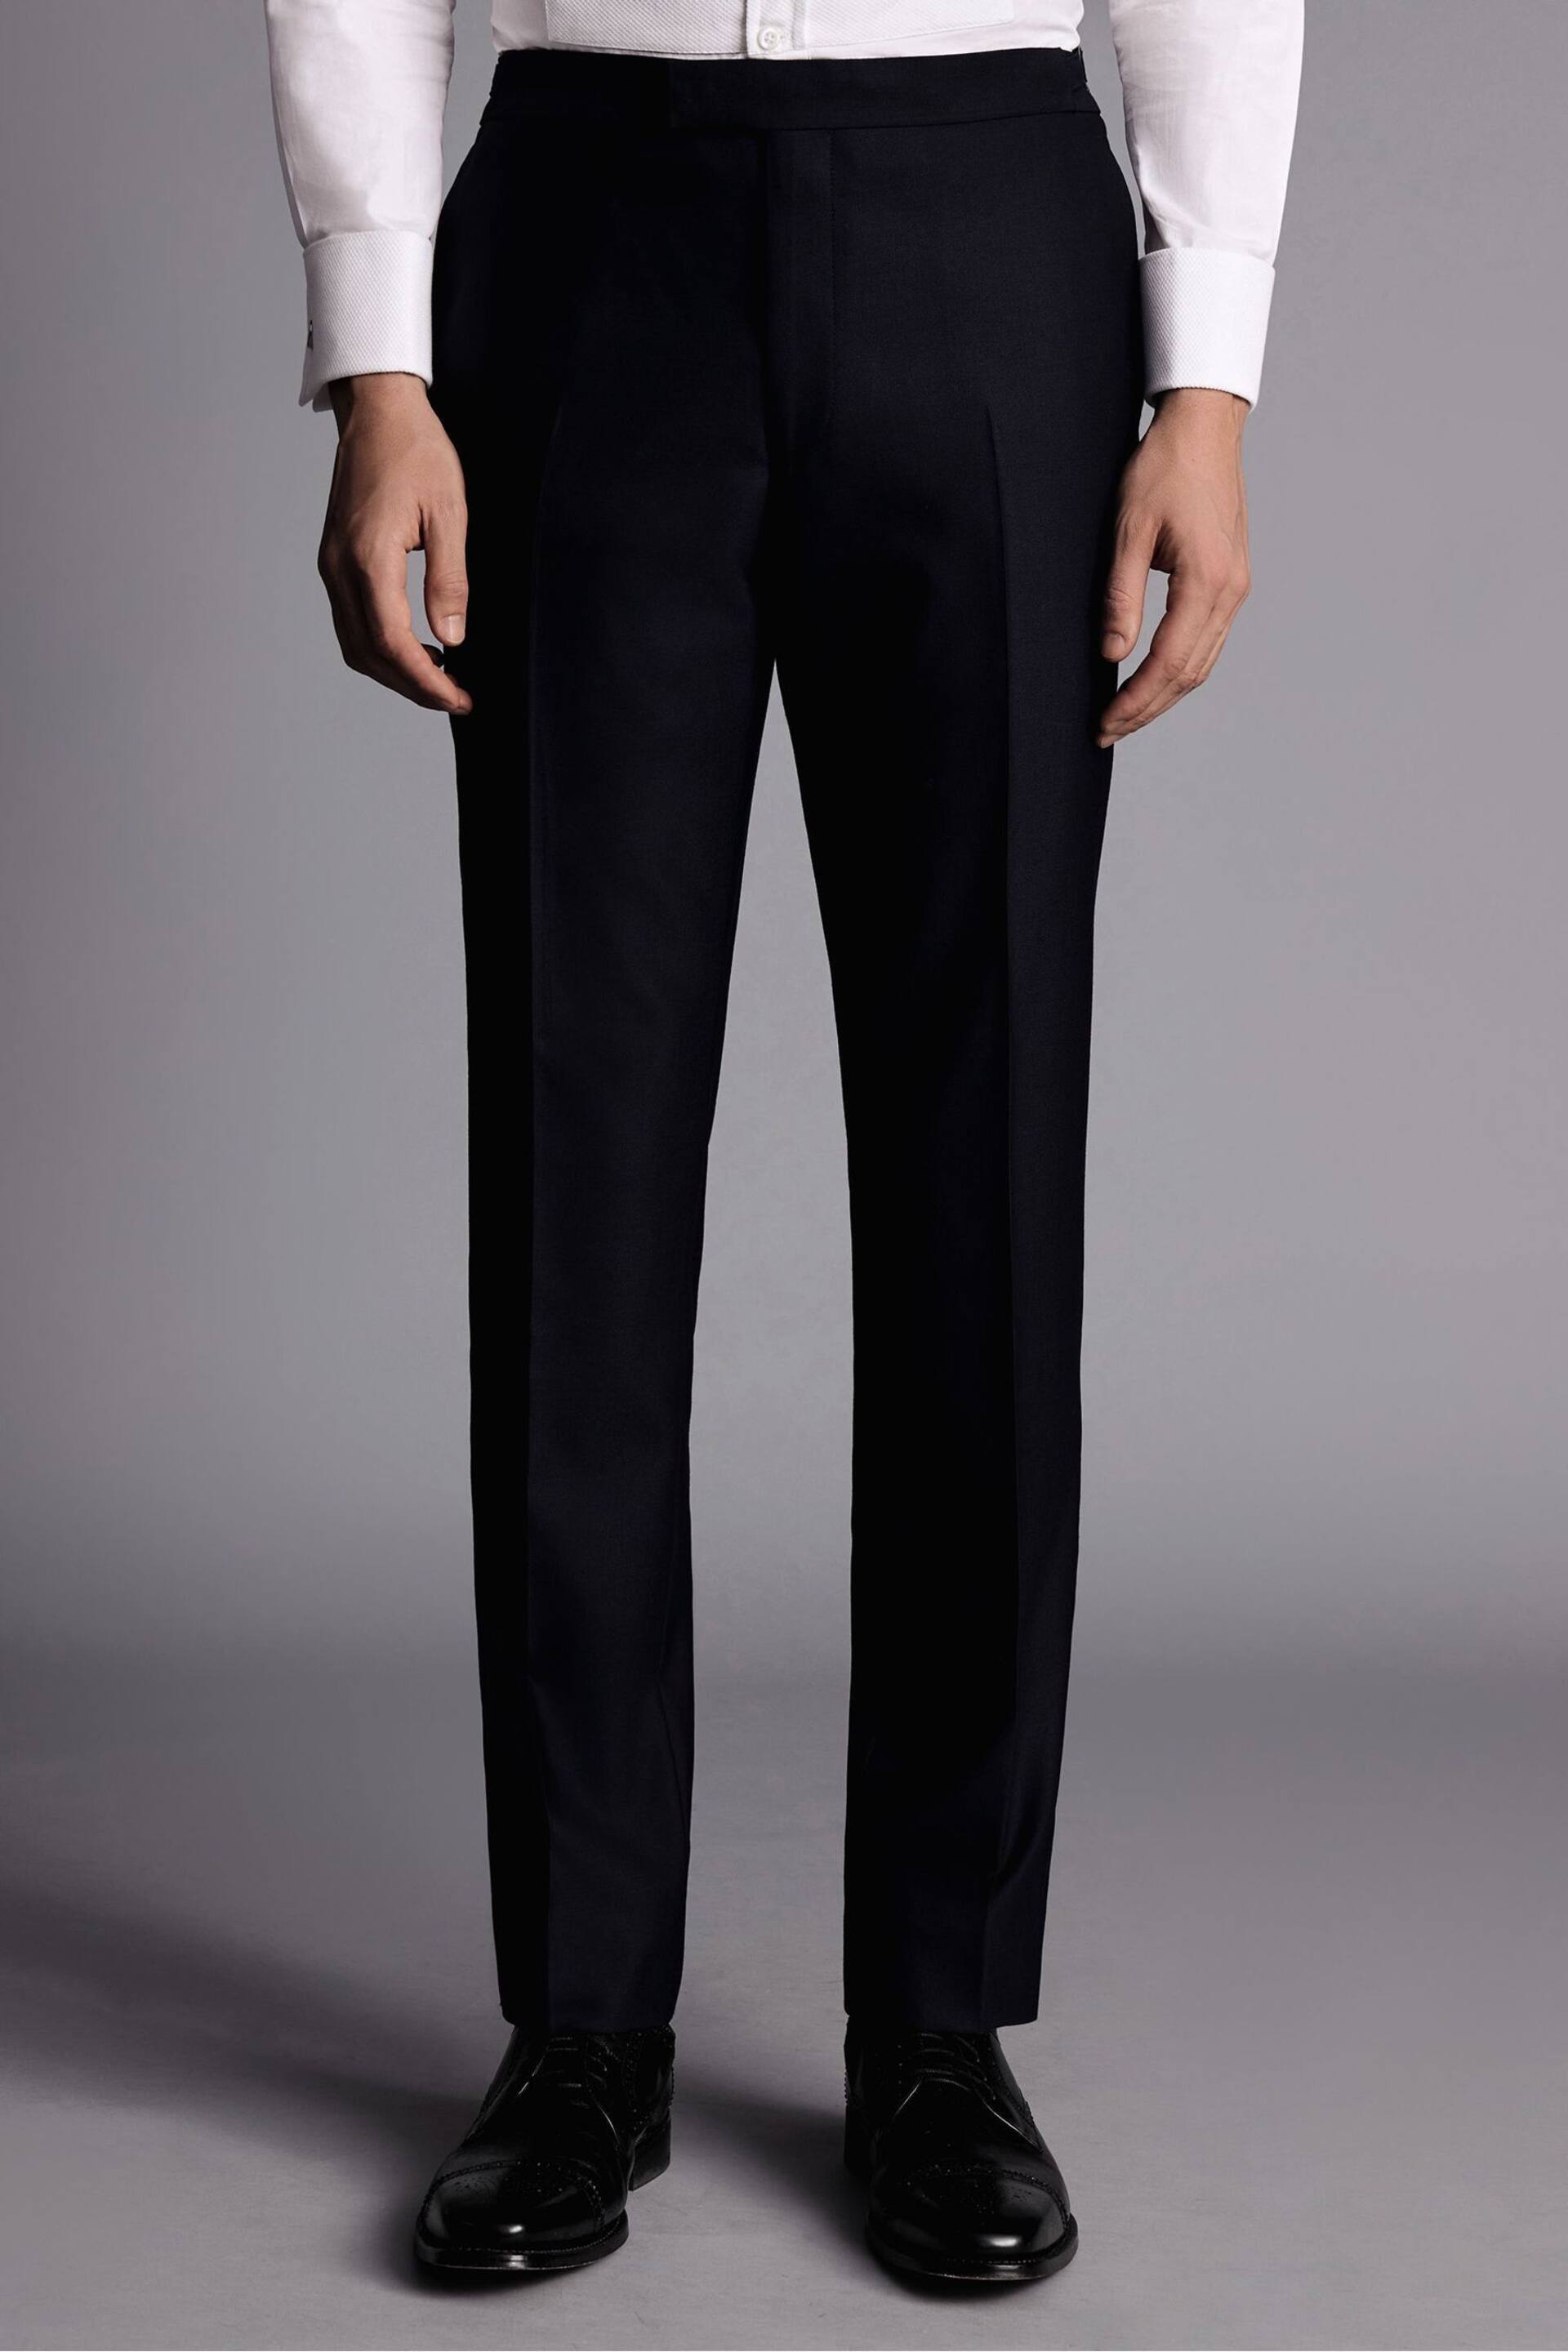 Charles Tyrwhitt Black Chrome Slim Fit Dinner Suit Trosusers - Image 1 of 3